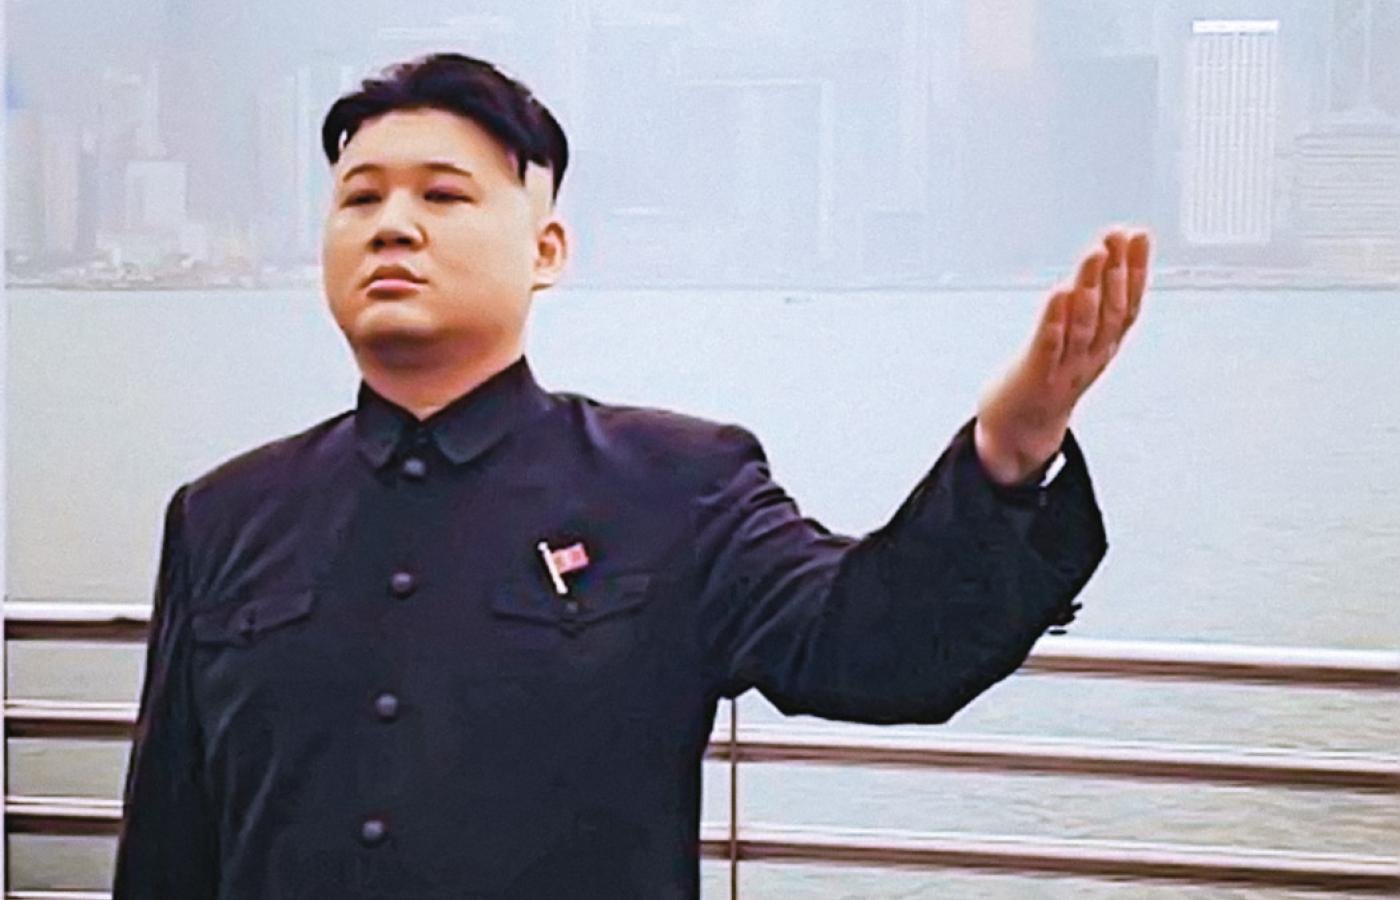 Dzisiejszy przywódca Korei Północnej, Kim Dzong Un, preferuje nieco inną fryzurę.